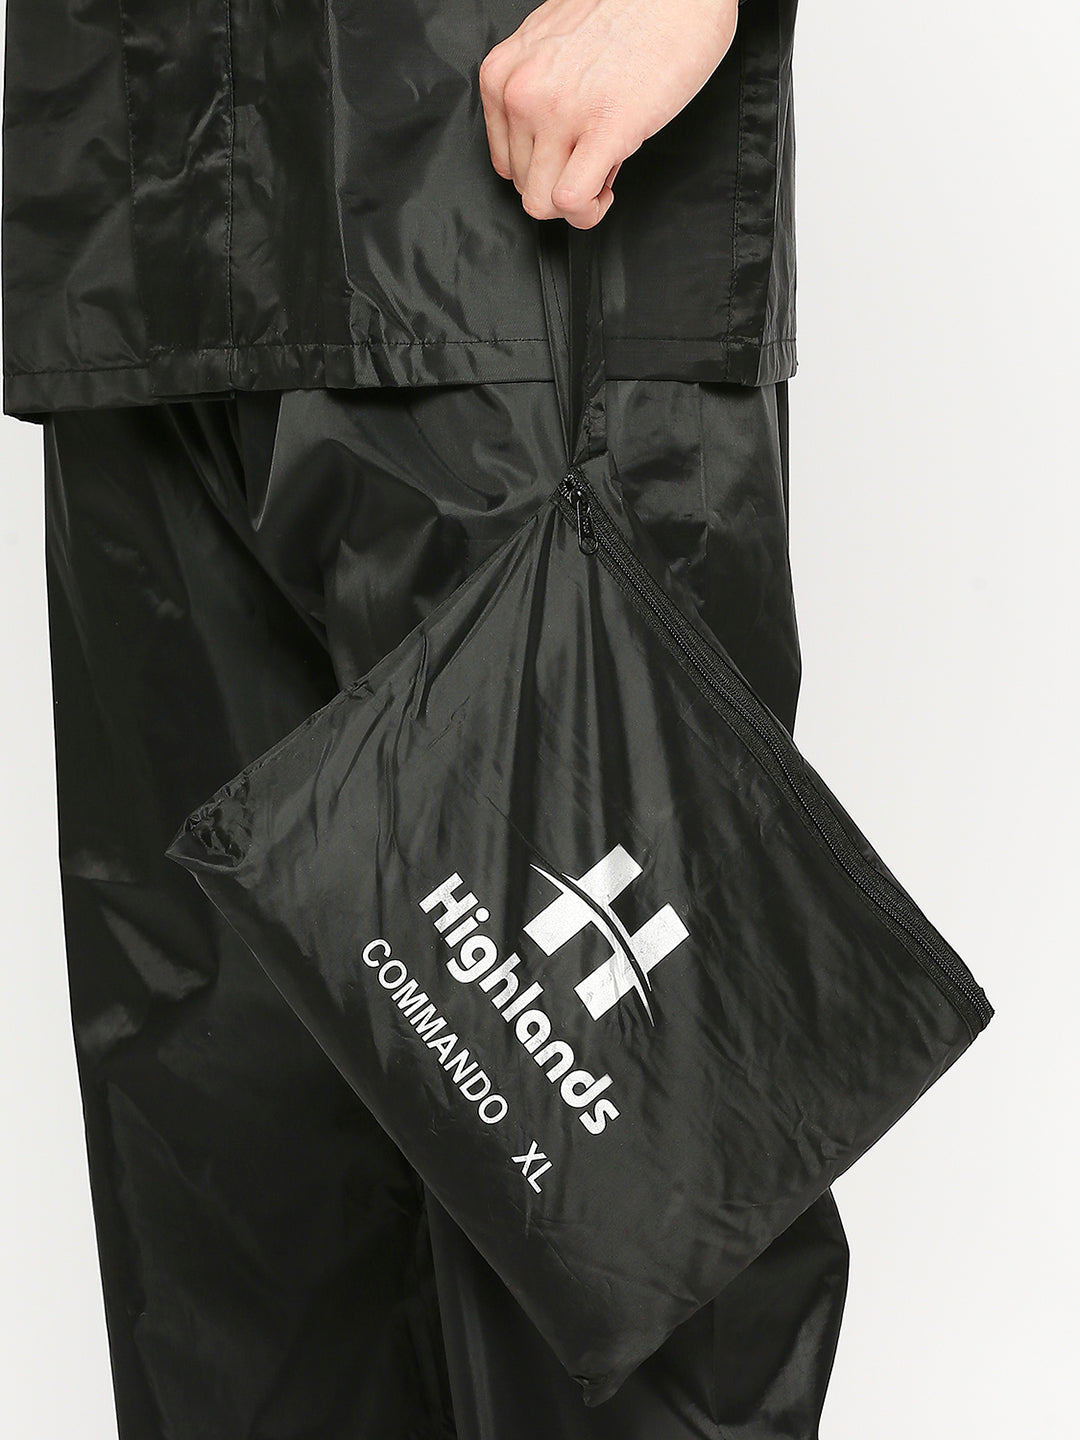 Highlands Commando Waterproof Rain Suit